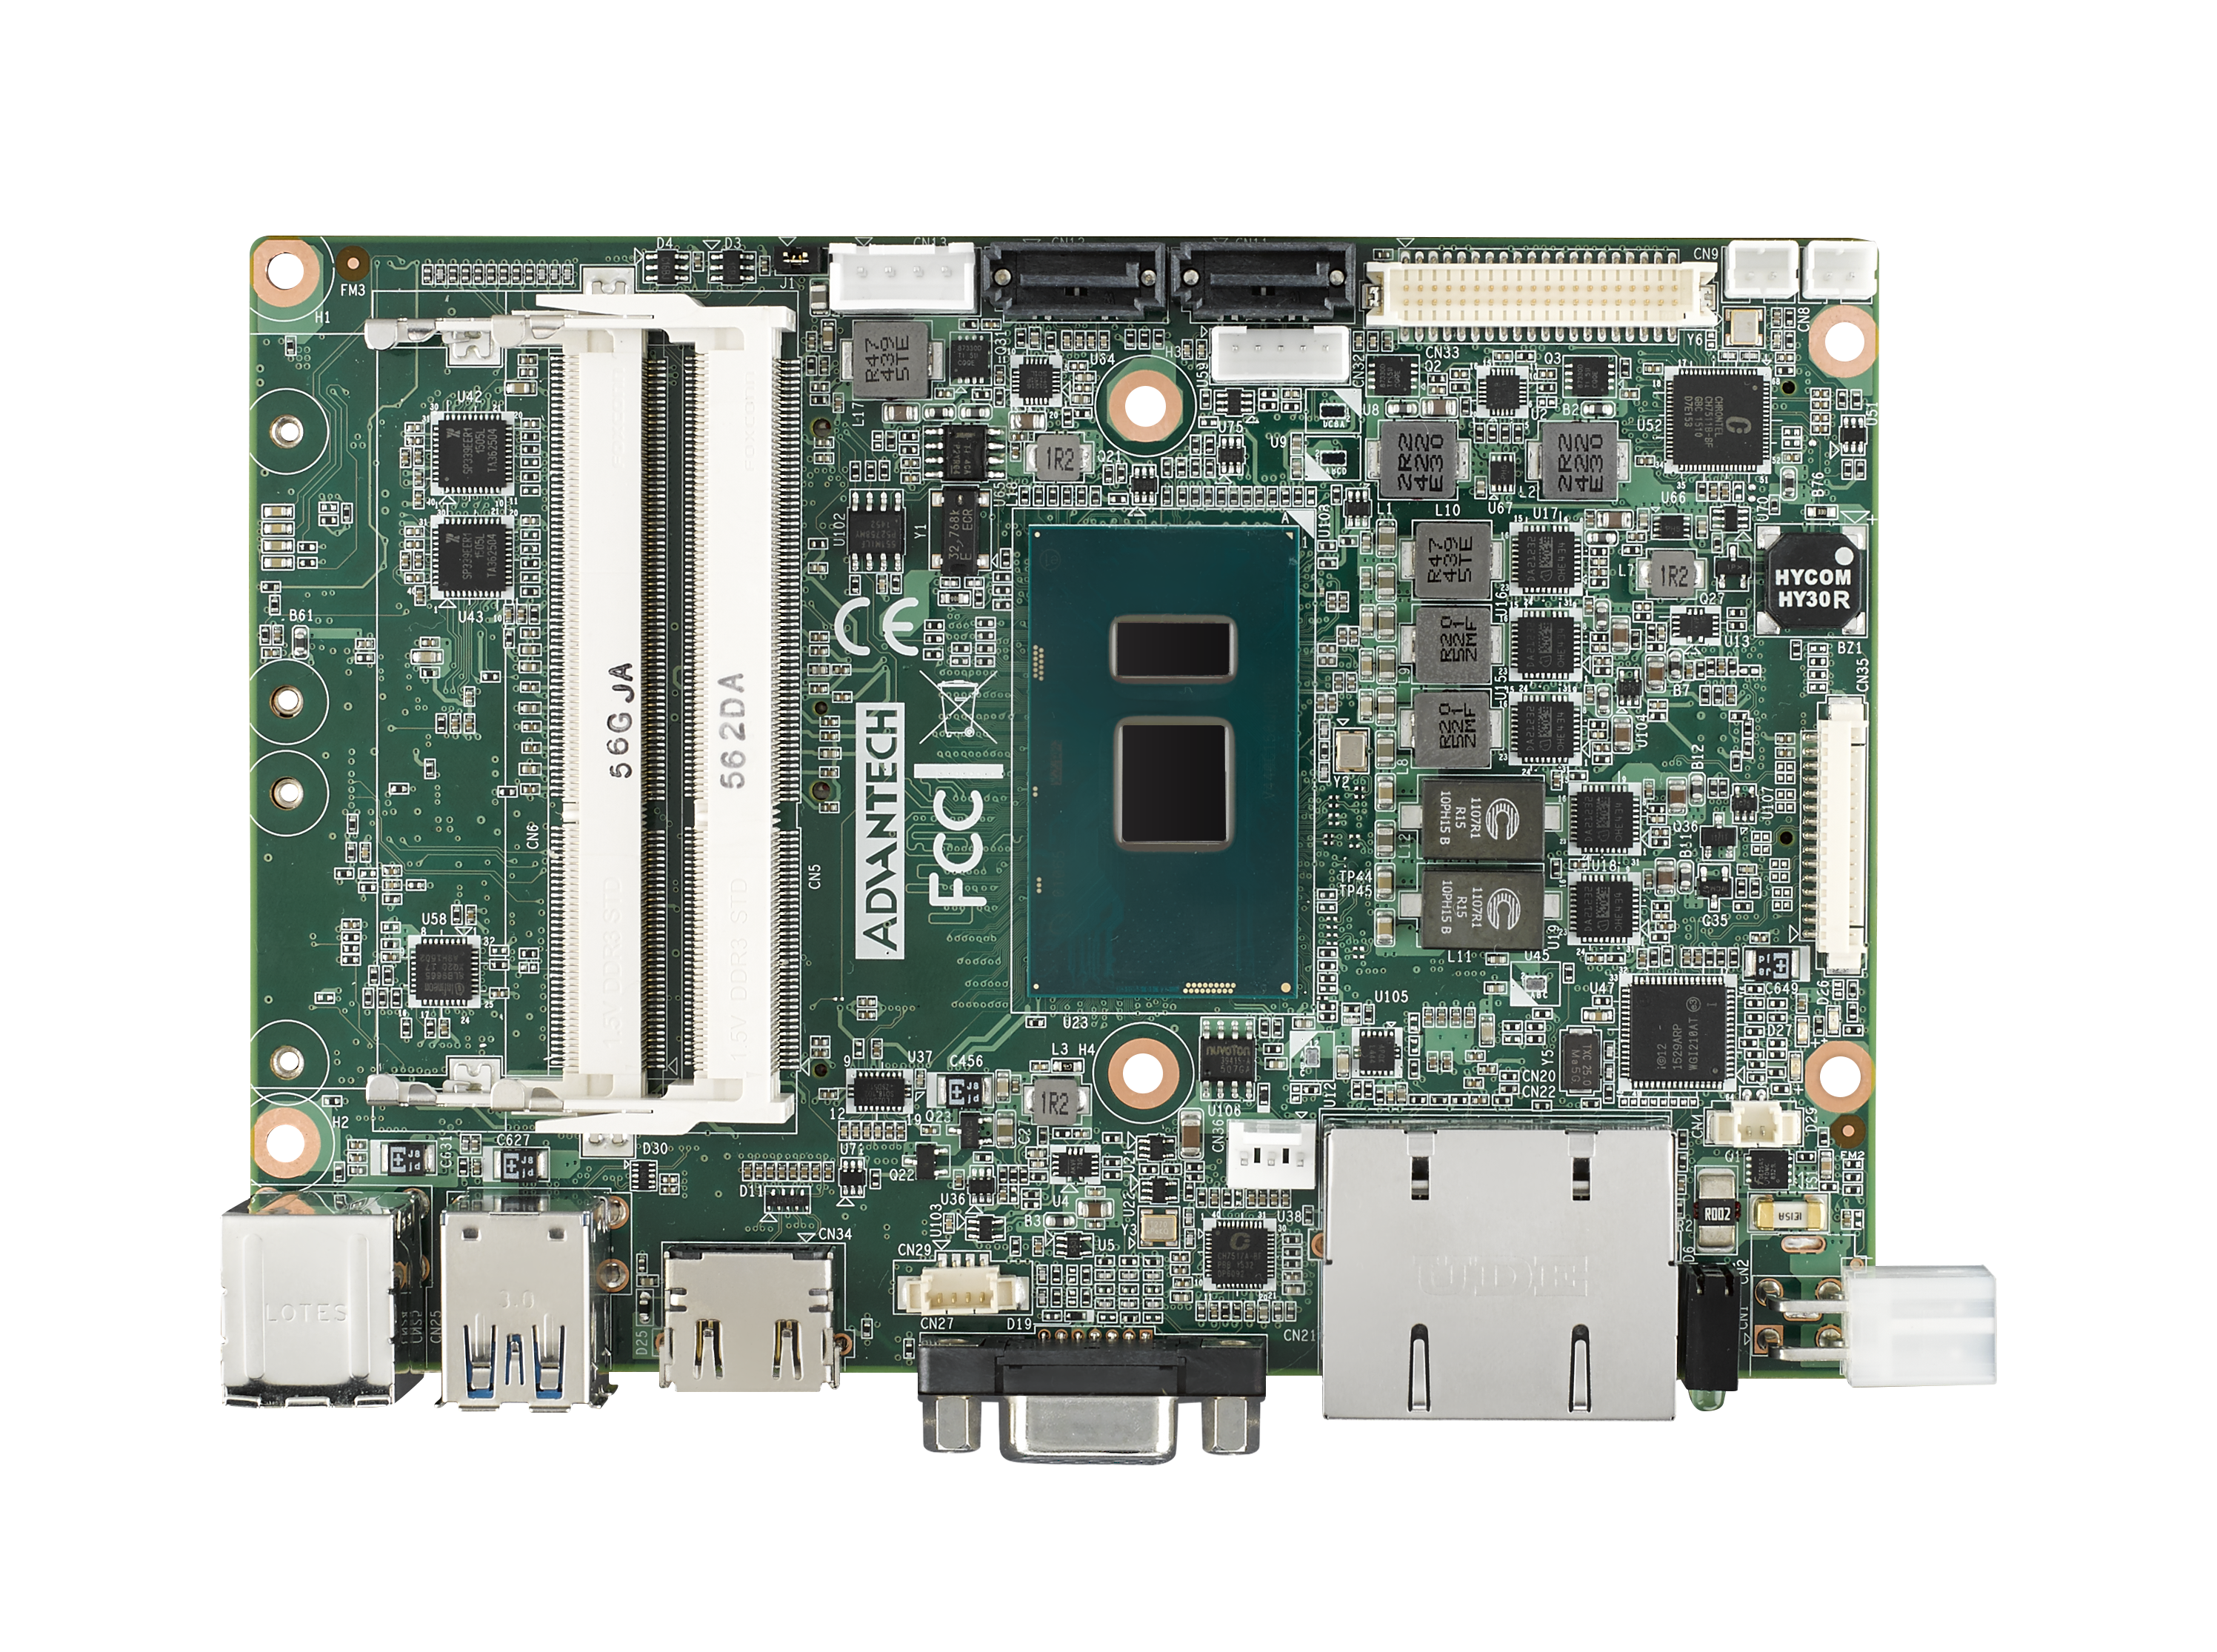 第6世代Intel<sup>®</sup> Core™ Uシリーズ (Intel i7 6600U 2.6GHz 15W), 3.5" MI/O-Compactシングルボードコンピュータ(DDR3L, VGA, HDMI, 48-bit LVDS, 2 GbE, 2 Mini PCIe, mSATA, Fanless, MIOe)－40℃～85℃対応 [最大15年供給]